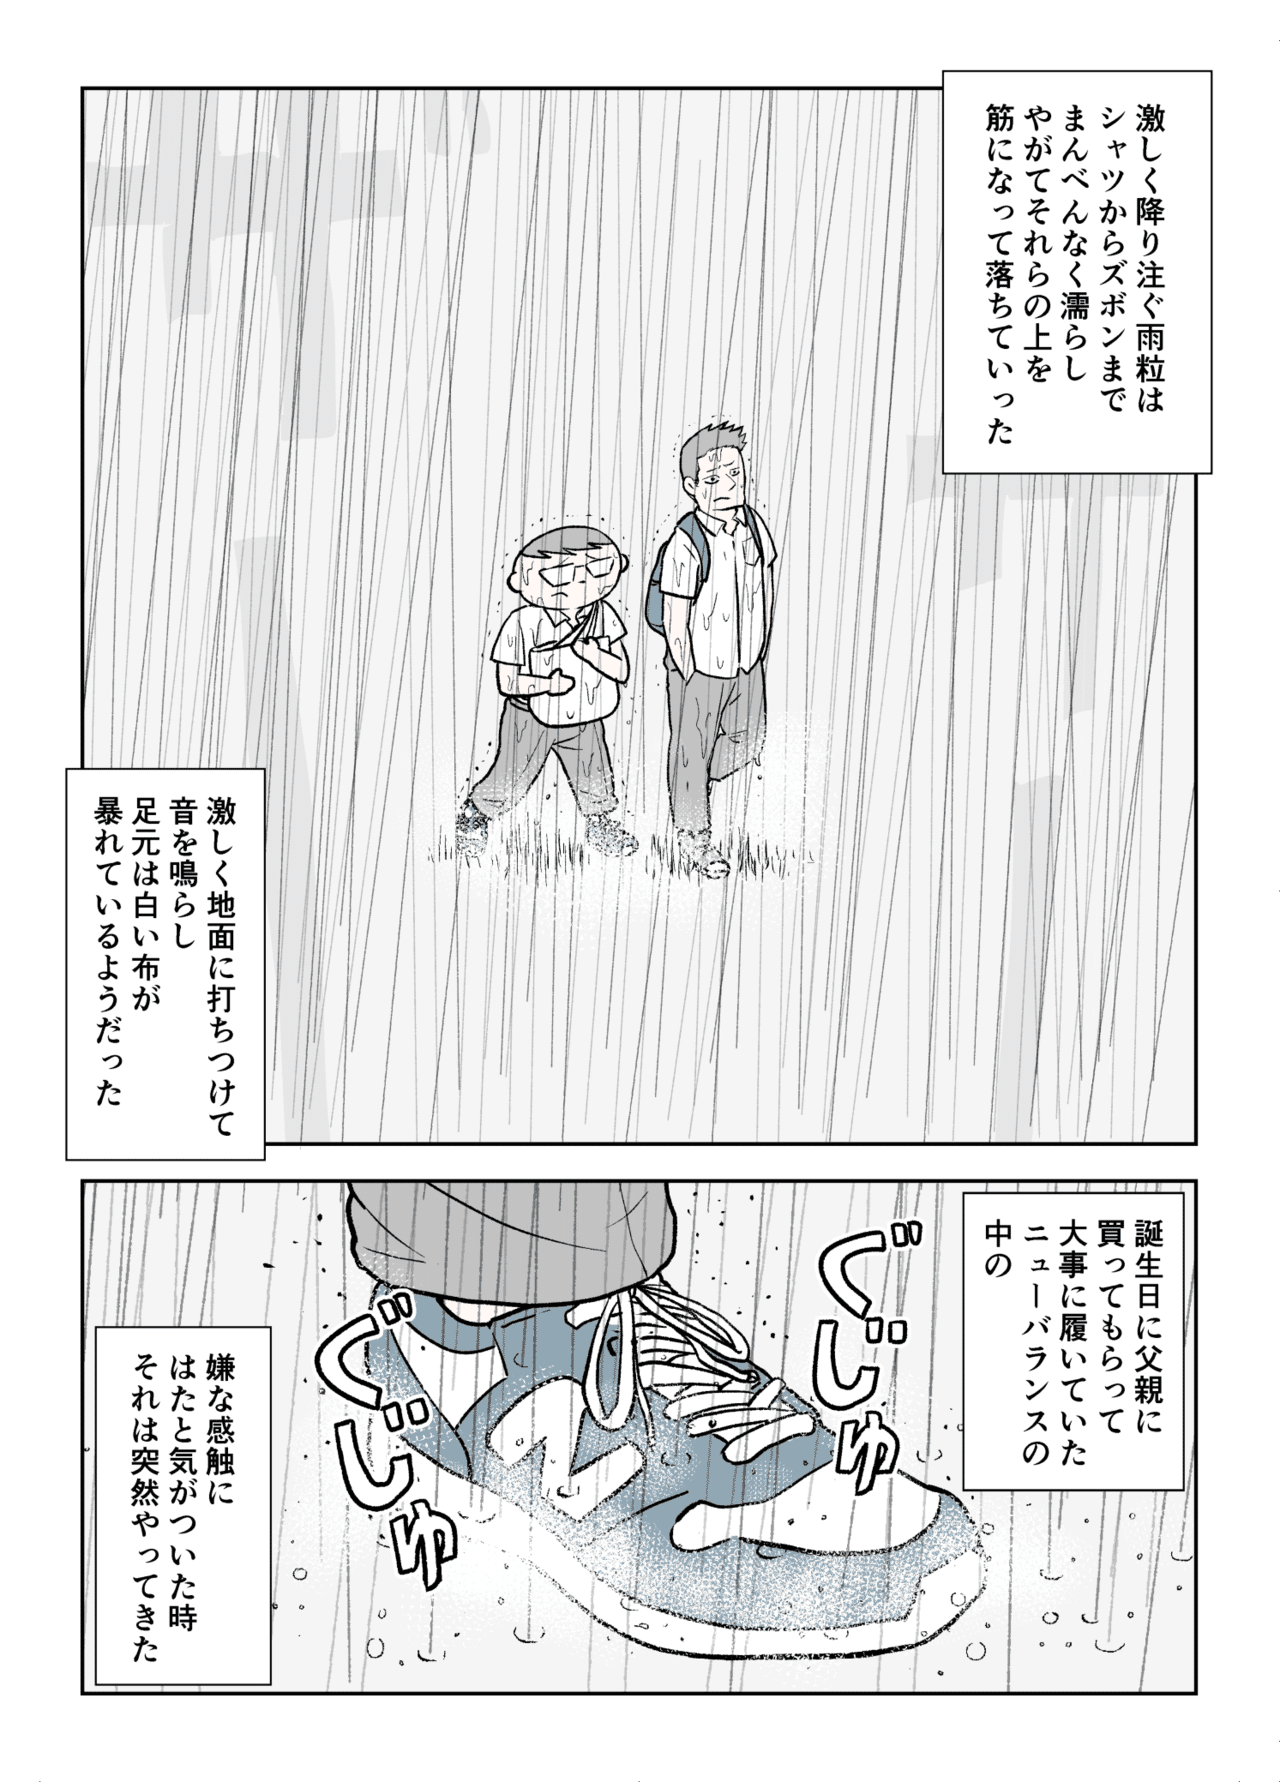 コミック4_004